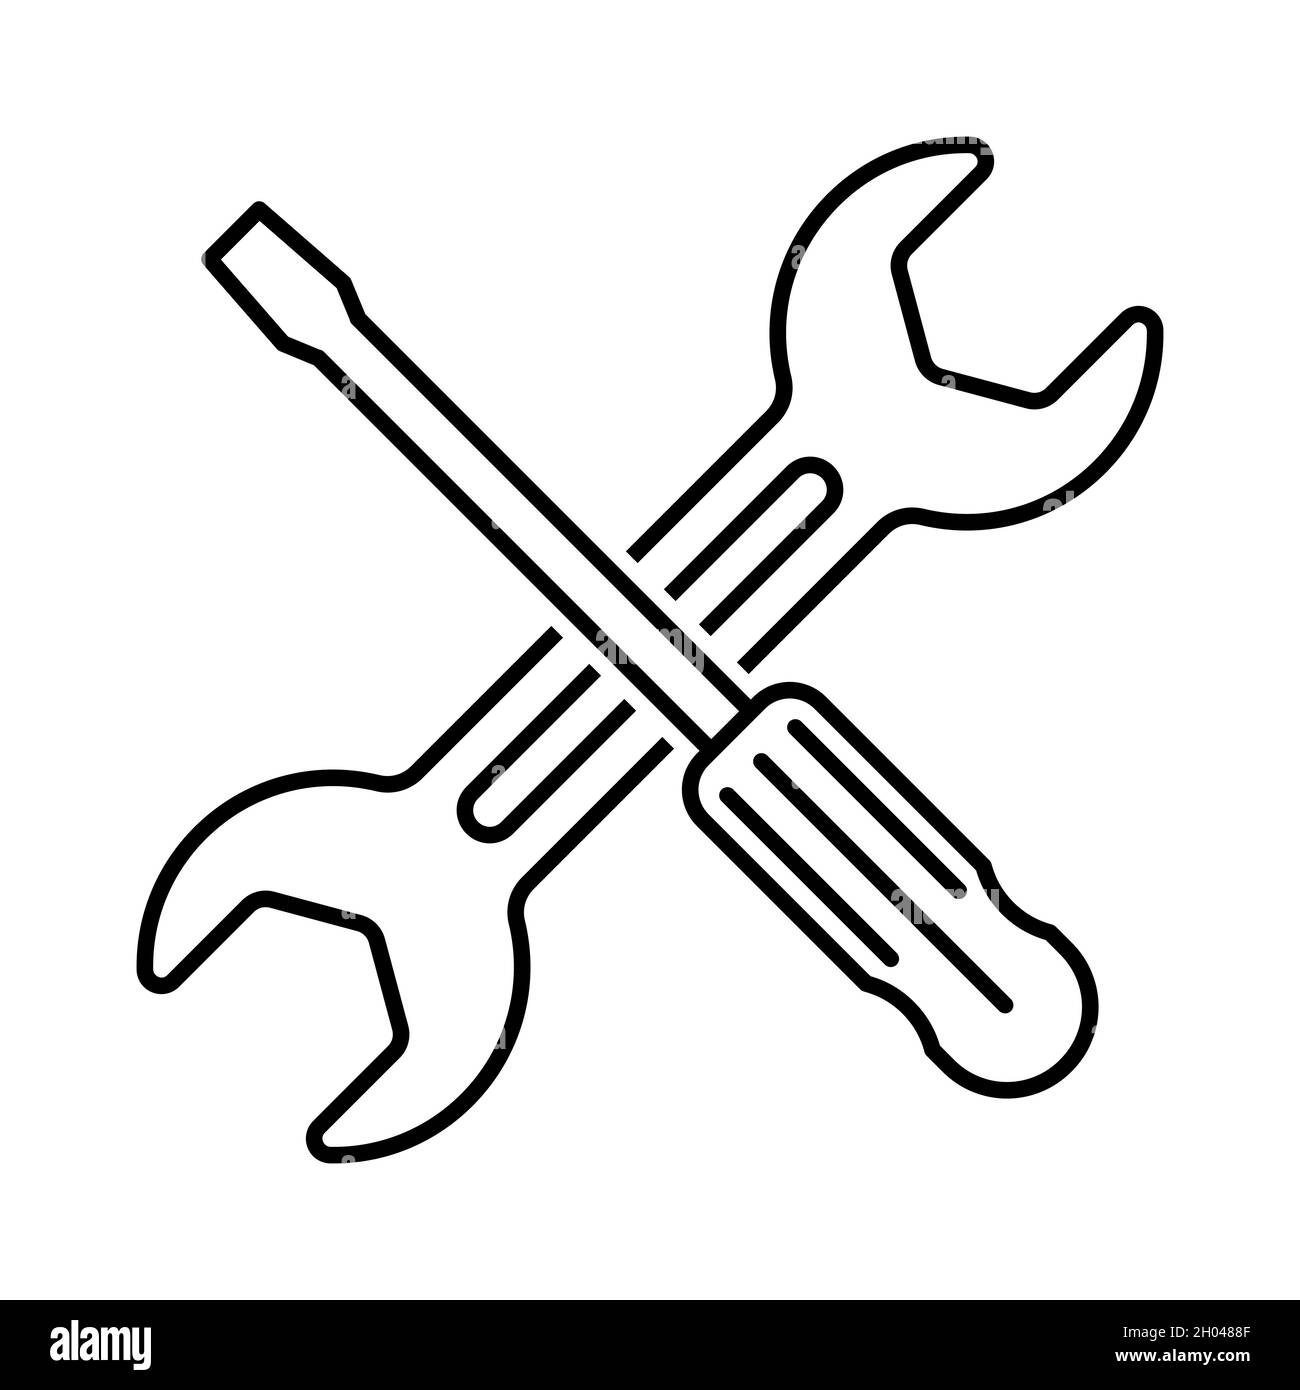 Symbol für Reparaturwerkzeuge. Symbol für das gekreuzte Werkzeug.  Schraubenschlüssel und Schraubendreher. Vektorgrafik Stock-Vektorgrafik -  Alamy